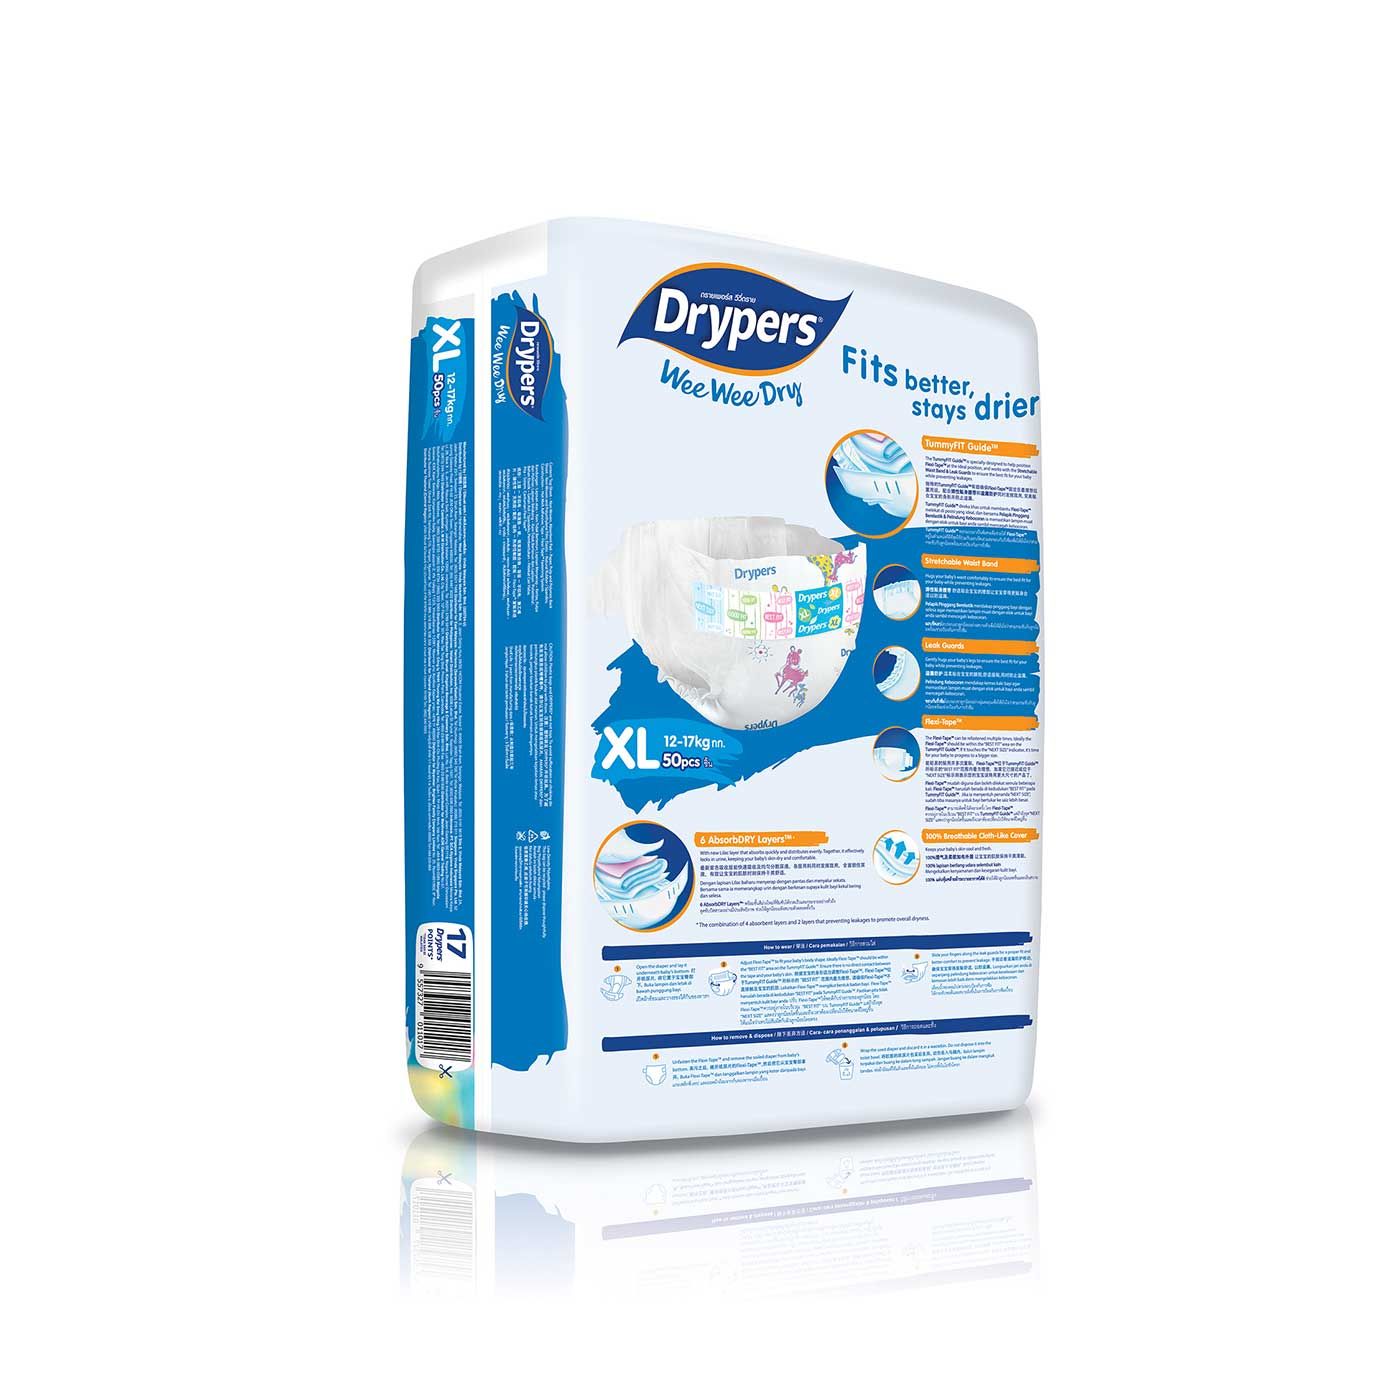 Drypers Wee Wee Dry - XL 50s - 4